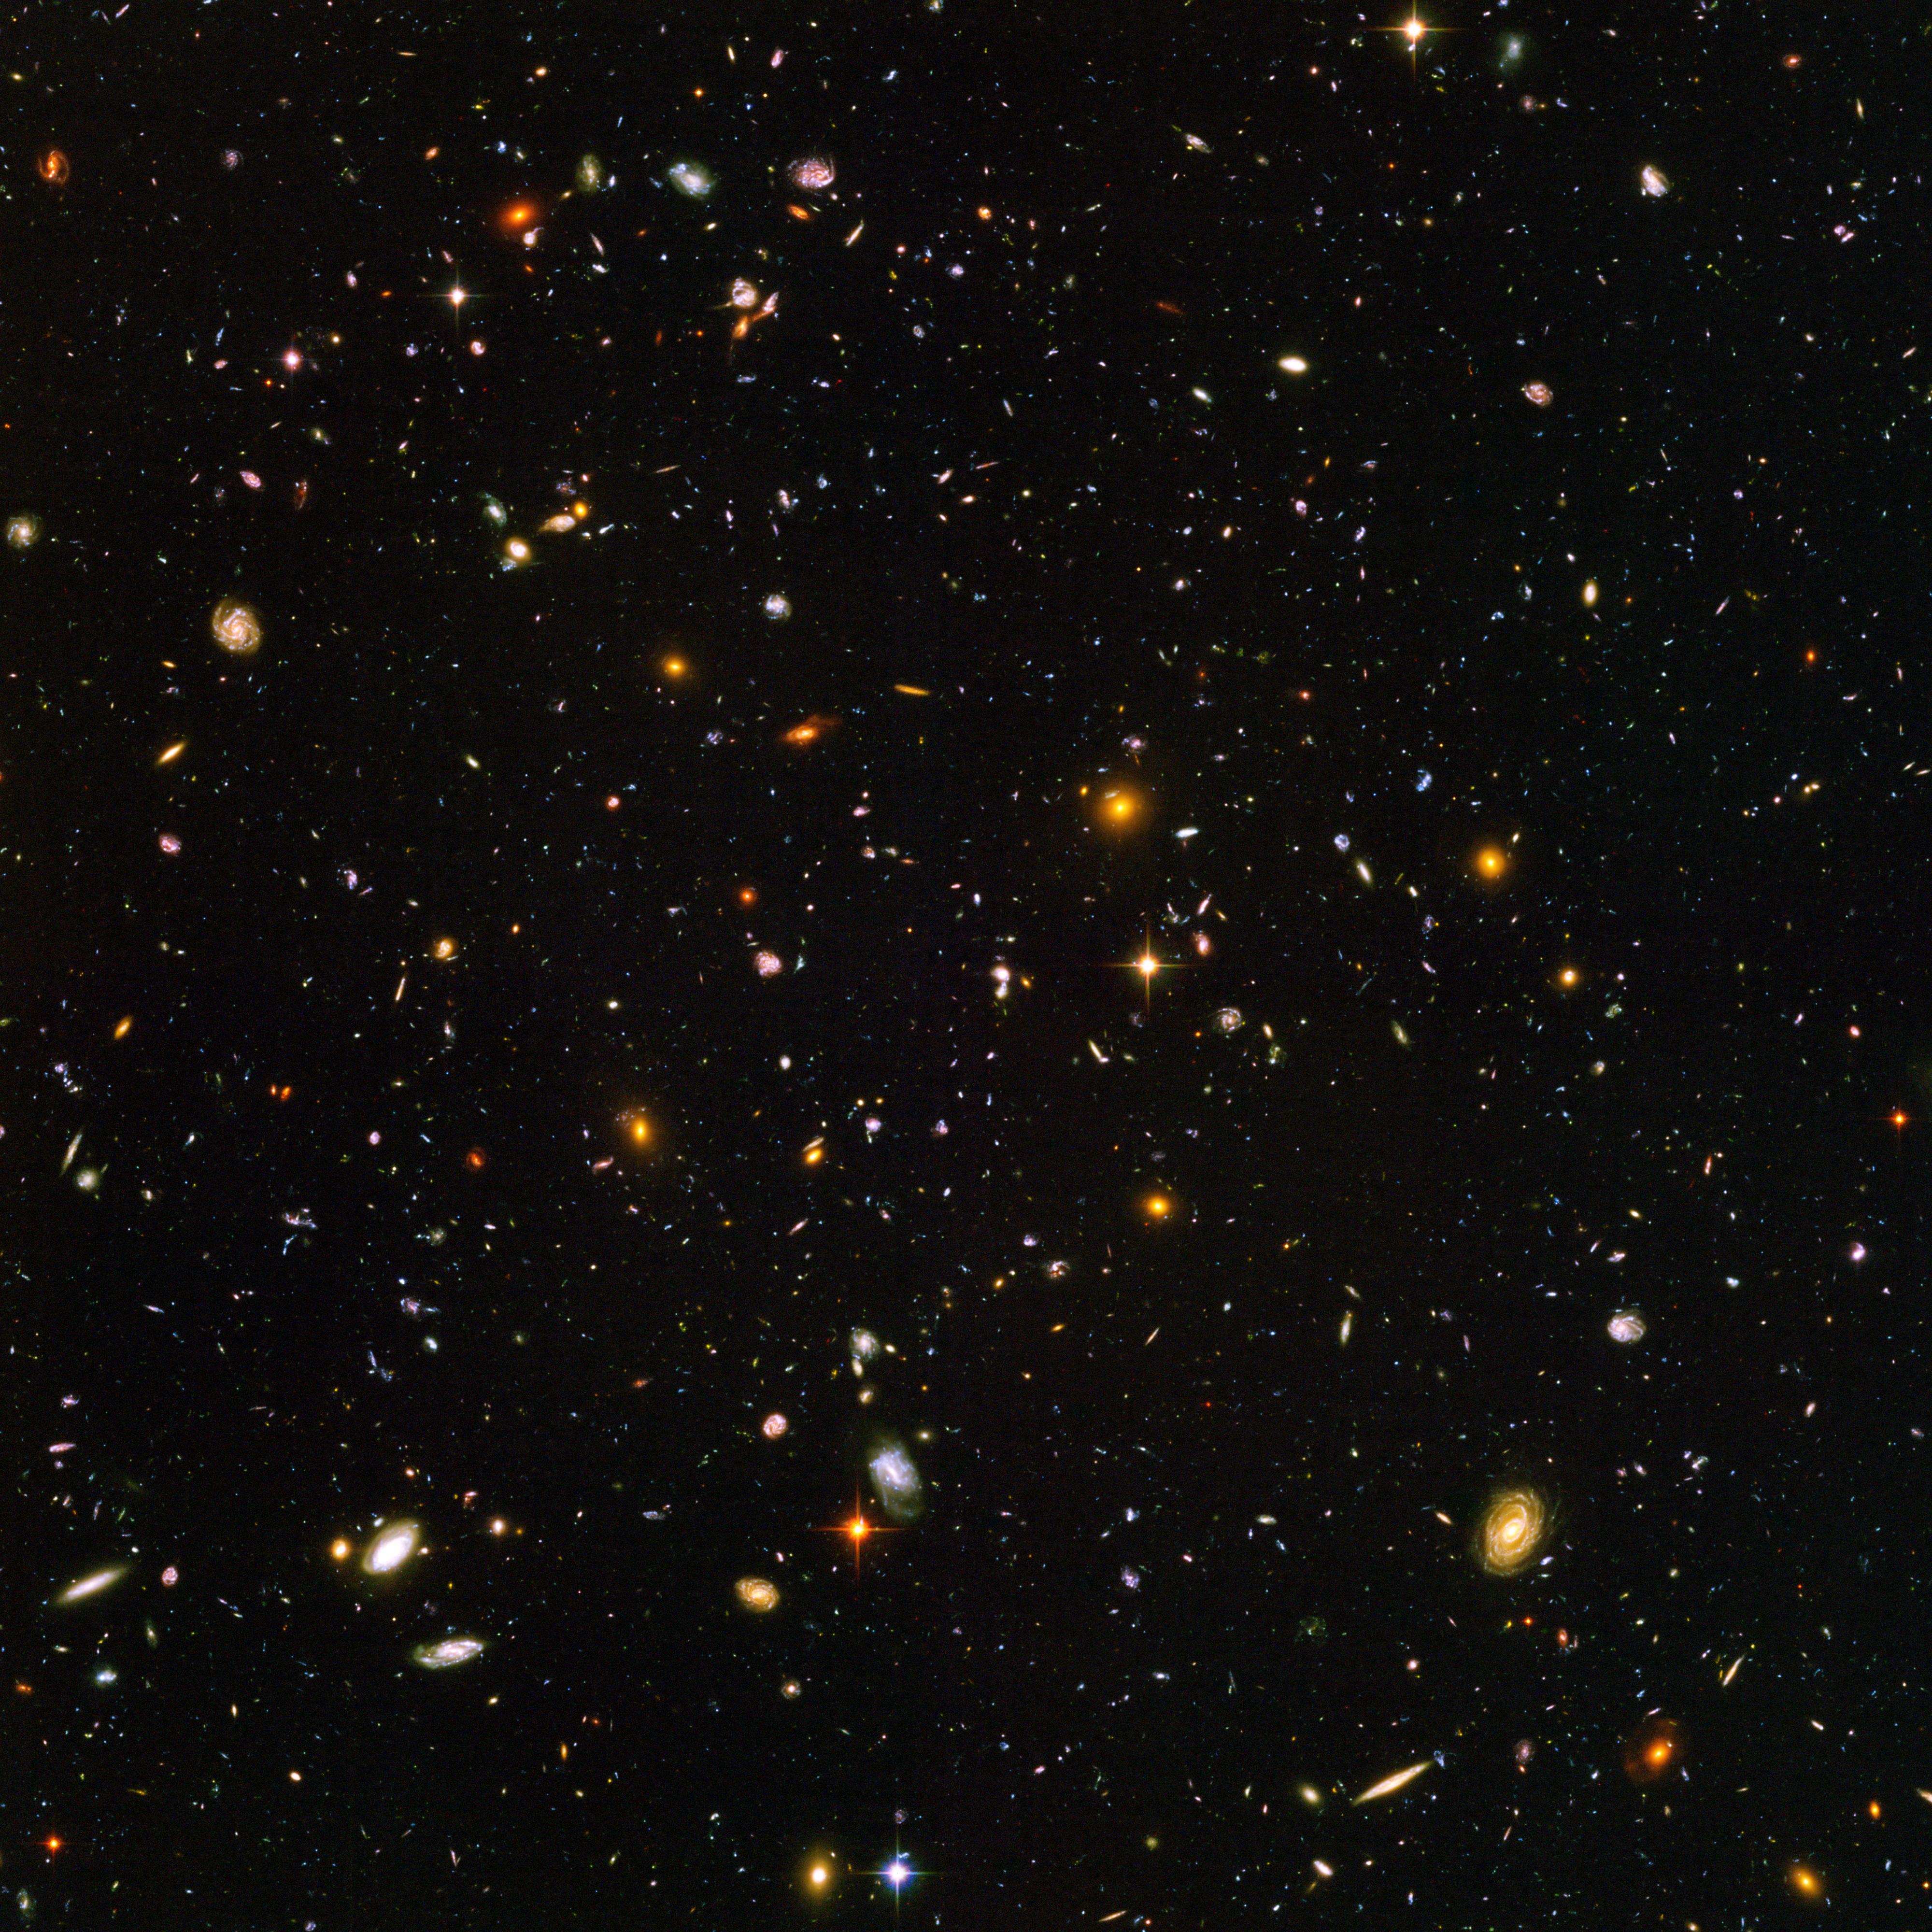 Cette vue de près de 10'000 galaxies est appelée le "Hubble Ultra Deep Field". L'instantané comprend des galaxies d'âges, de tailles, de formes et de couleurs variées. Les galaxies les plus petites et les plus rouges, environ 100, pourraient être parmi les plus lointaines connues, existant lorsque l'Univers n'avait que 800 millions d'années. Les galaxies les plus proches – les spirales et les elliptiques plus grandes, plus brillantes et bien définies – se sont développées il y a environ 1 milliard d'années, lorsque le Cosmos avait 13 milliards d'années.L'image a nécessité 800 expositions prises au cours de 400 orbites de Hubble autour de la Terre. La durée totale d'exposition a été de 11,3 jours, entre le 24 septembre 2003 et le 16 janvier 2004. [NASA/ESA - S. Beckwith (STScI) and the HUDF Team]